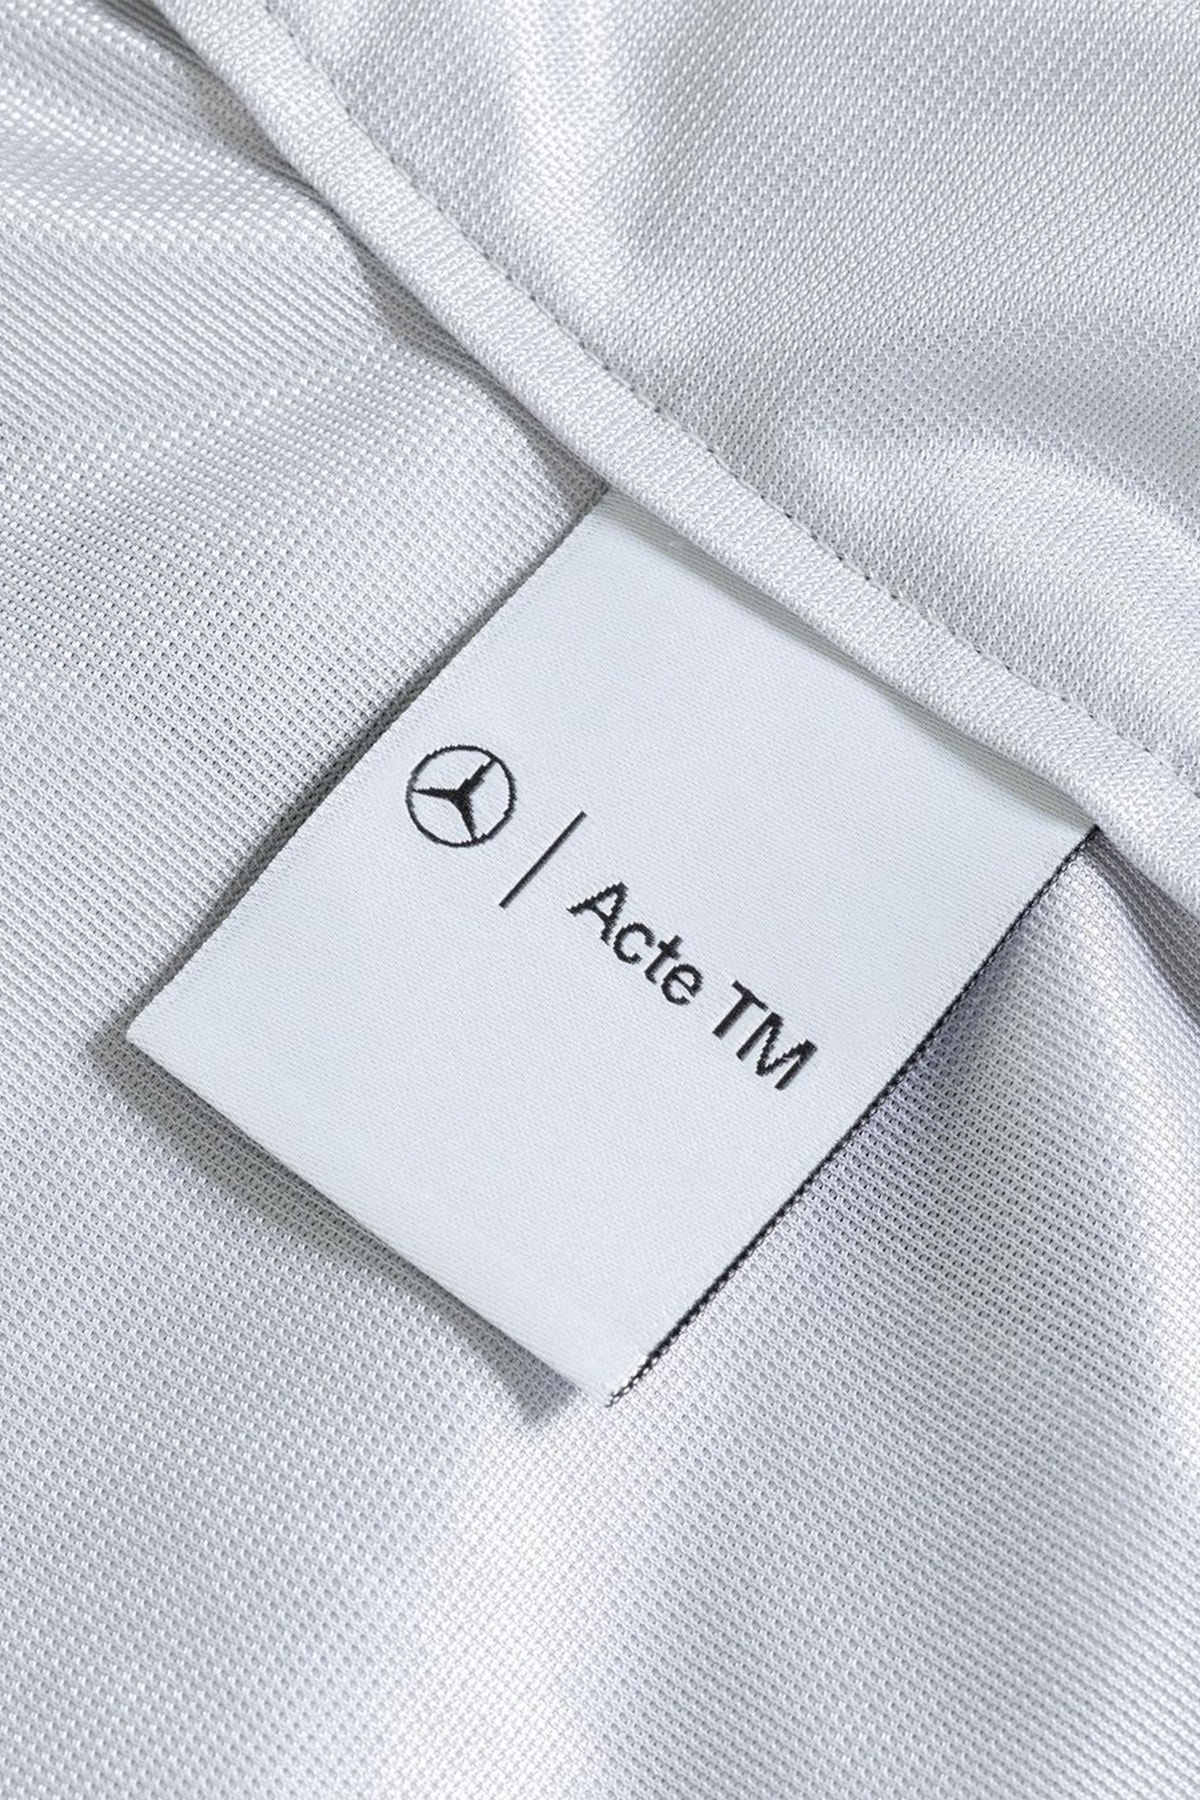 Mercedes-Benz x Acte TM 全新联名系列发布